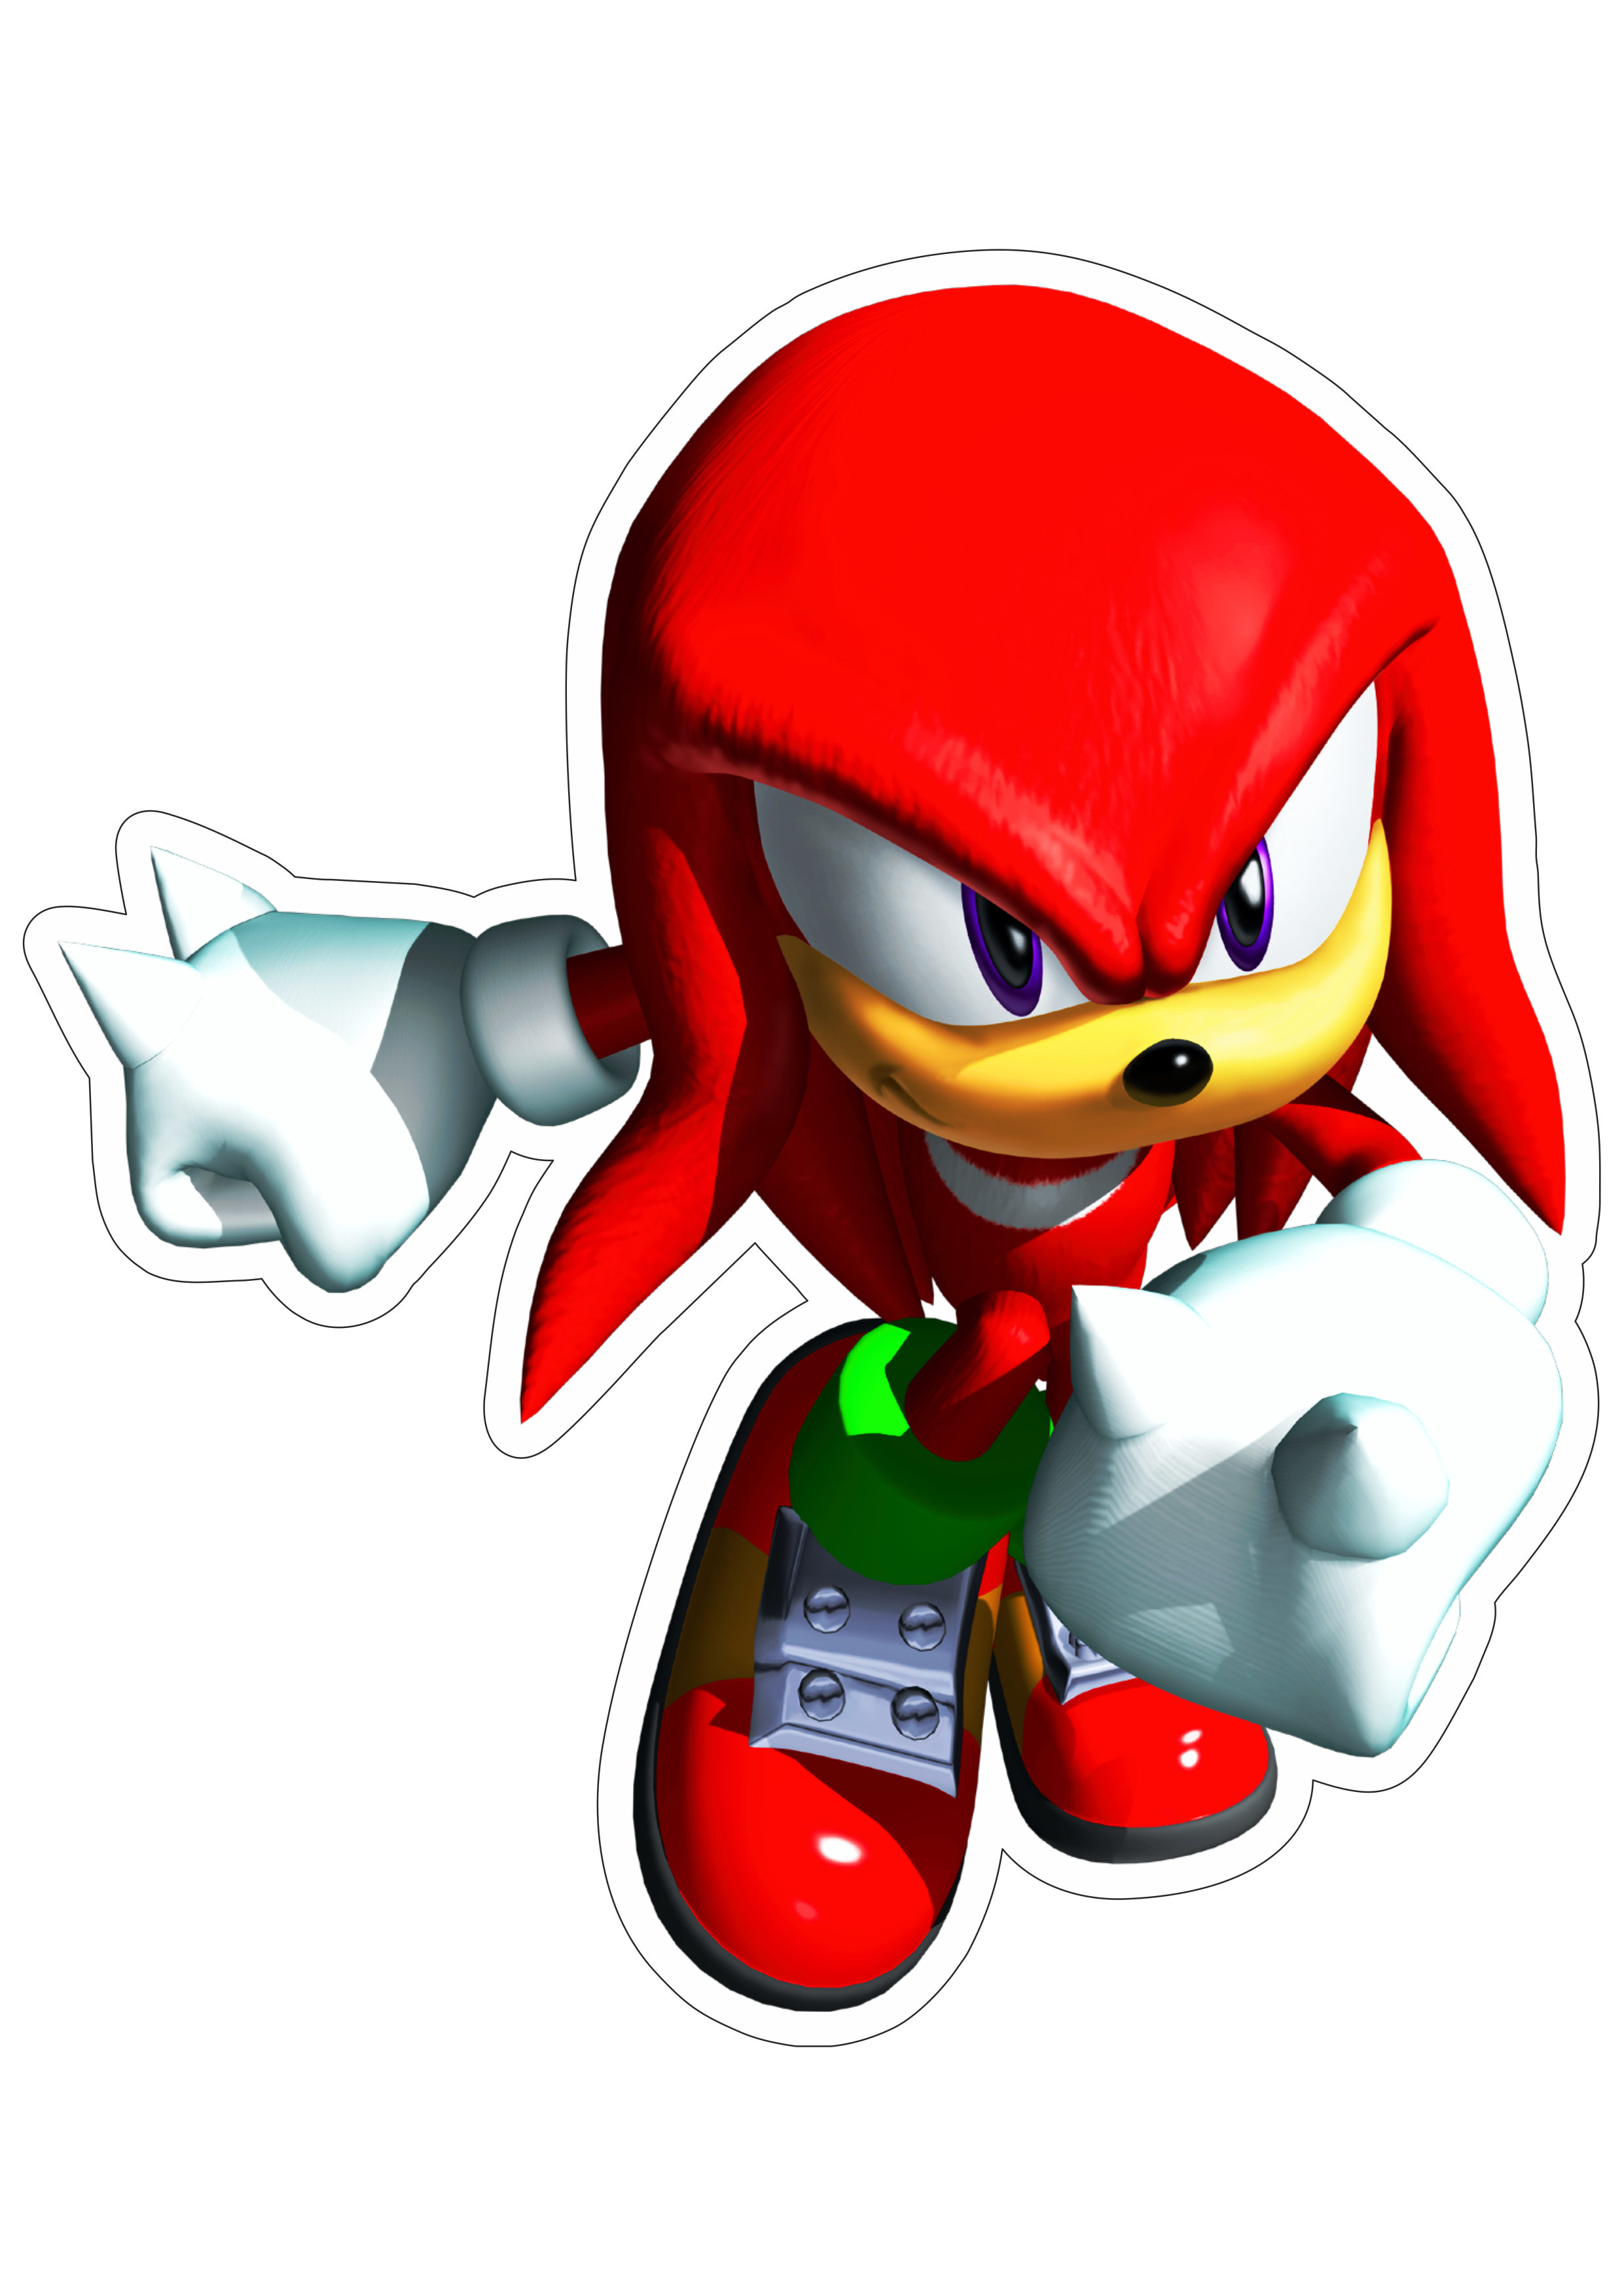 Knuckles Sonic the hedgehog personagem de game design fundo transparente com contorno png